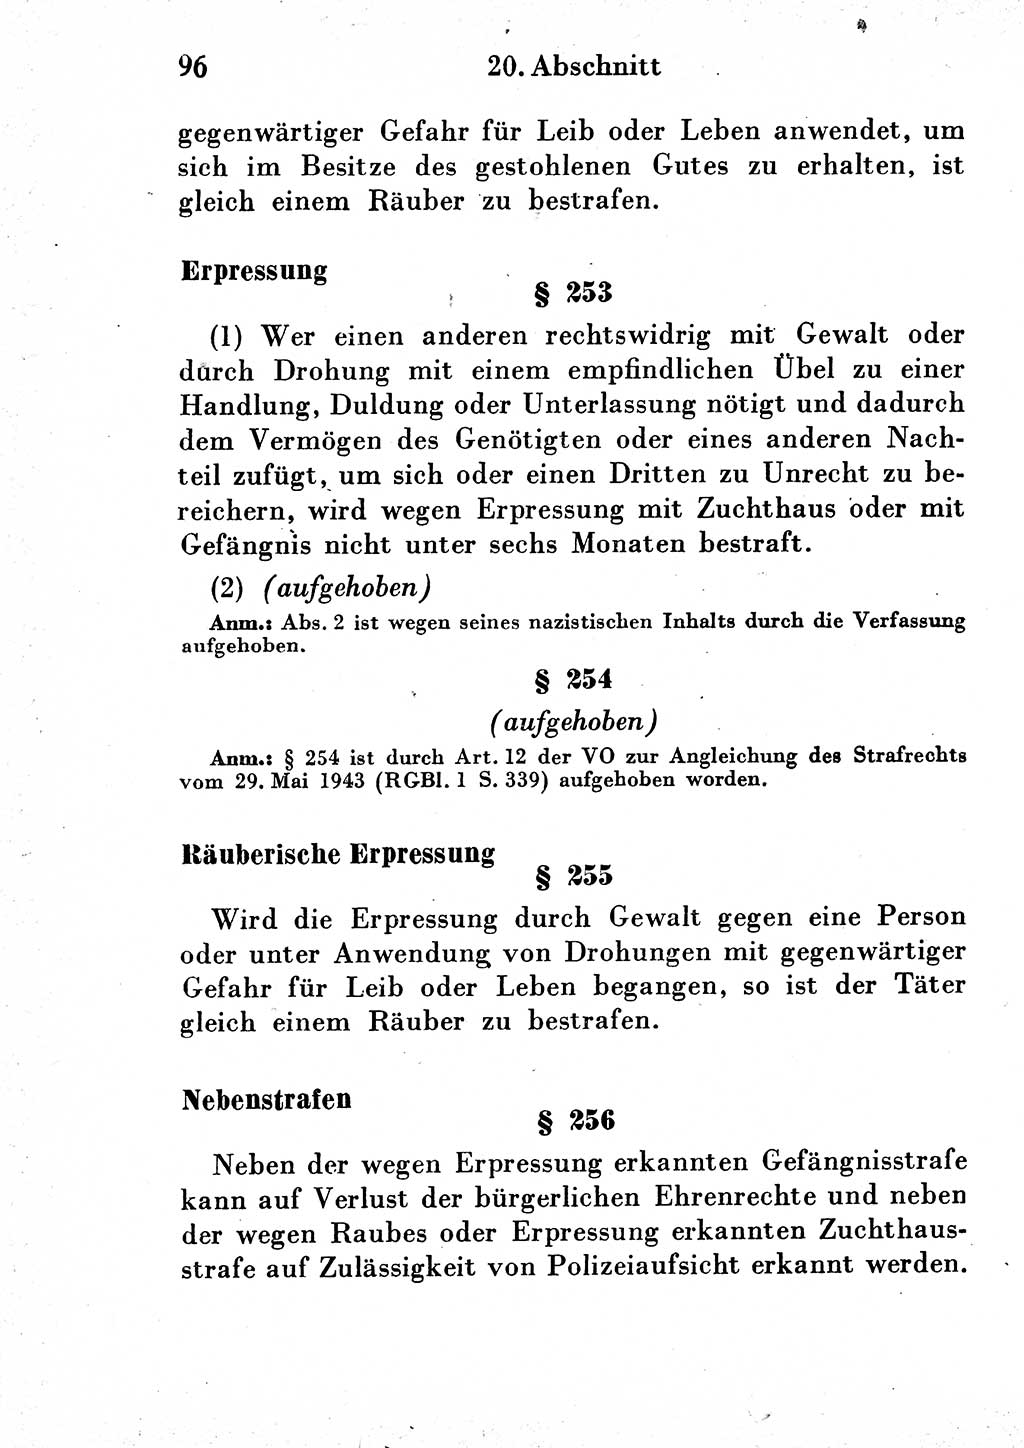 Strafgesetzbuch (StGB) und andere Strafgesetze [Deutsche Demokratische Republik (DDR)] 1954, Seite 96 (StGB Strafges. DDR 1954, S. 96)